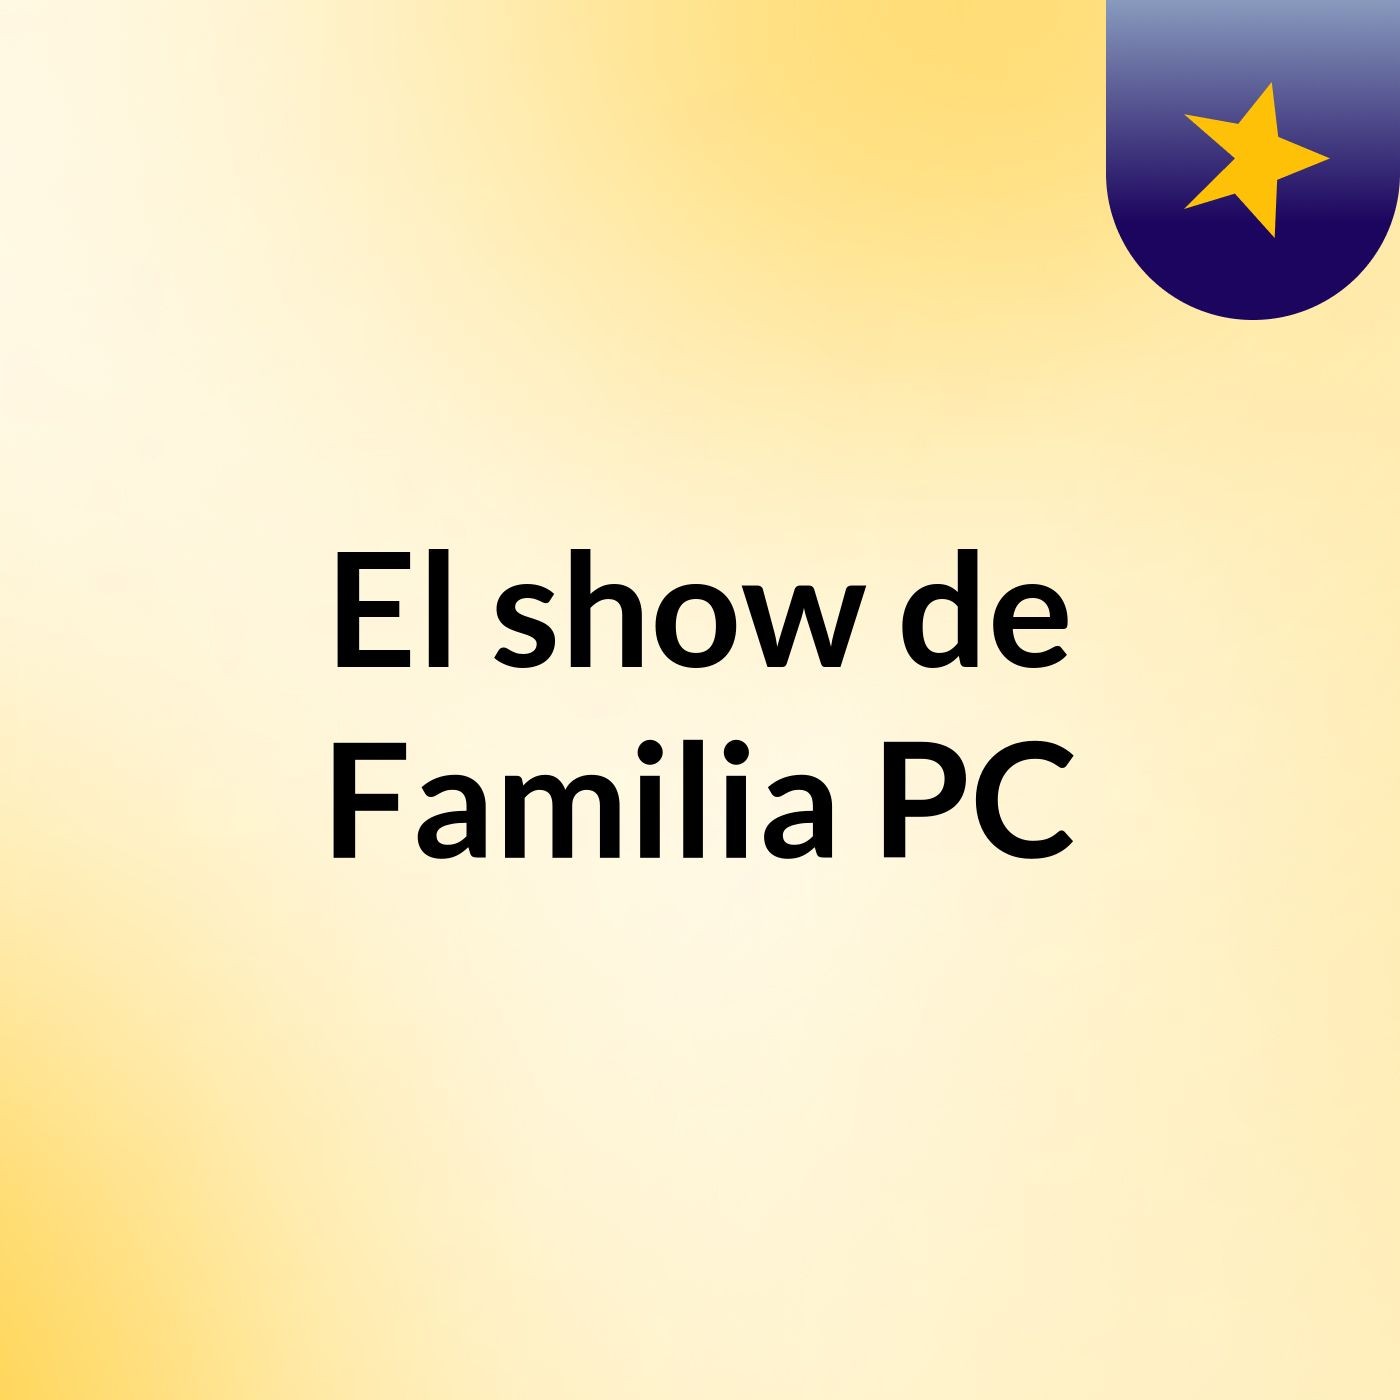 El show de Familia PC